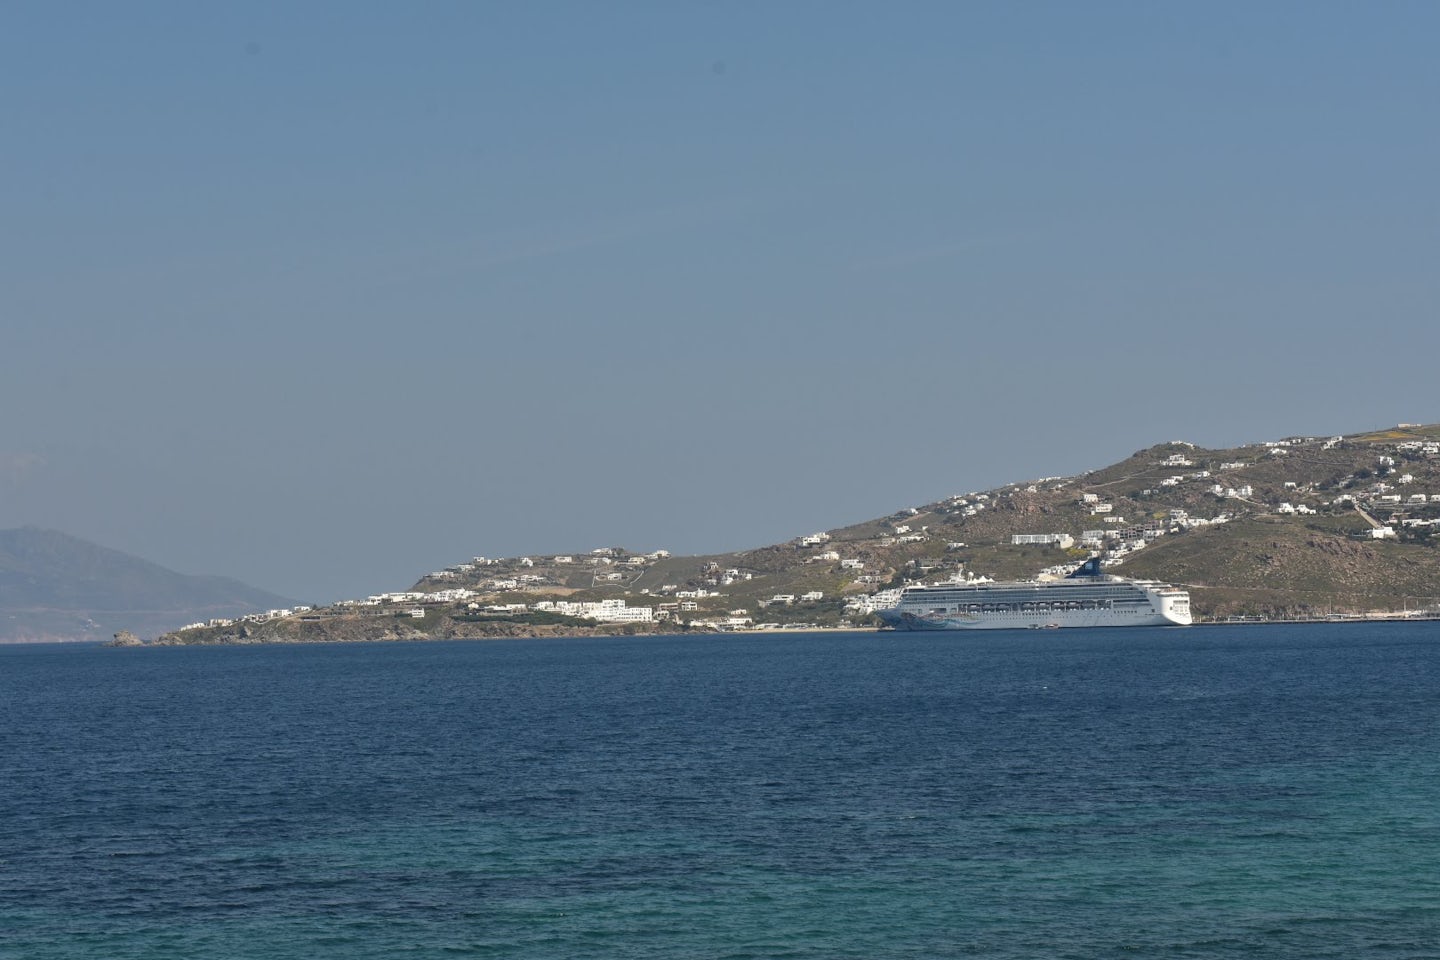 The ship docked in Mykonos